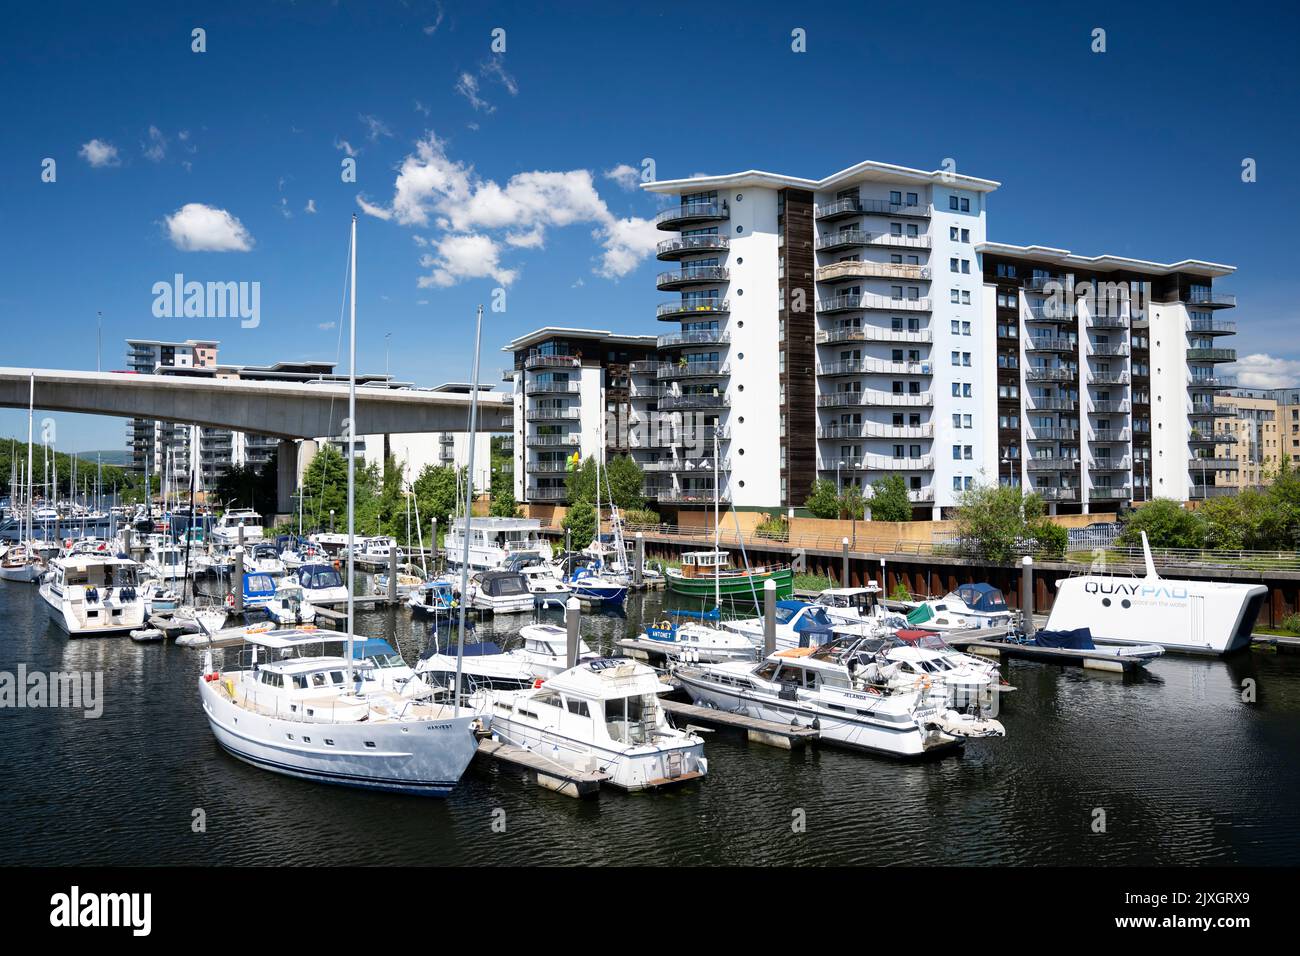 Barche contro un cielo blu vicino agli appartamenti di Atlantic Wharf nel fiume Ely a Cardiff, Galles, Regno Unito. Foto Stock